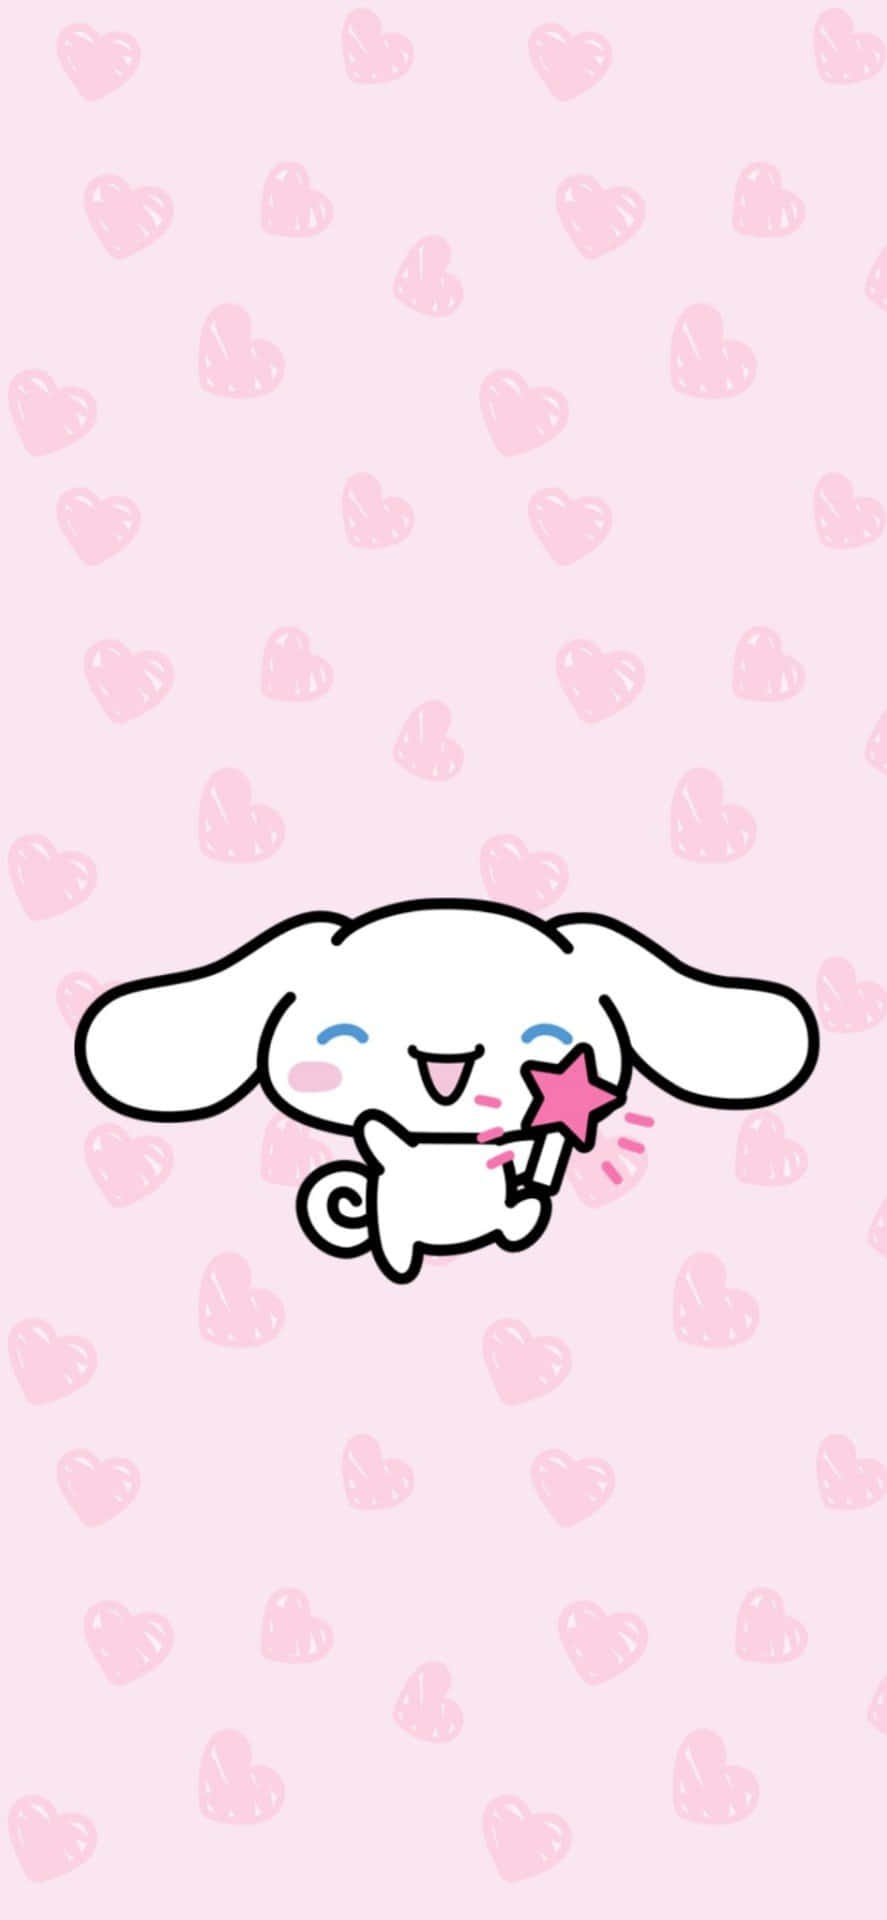 A Cute Kawaii Bunny Holding A Pink Star Wallpaper